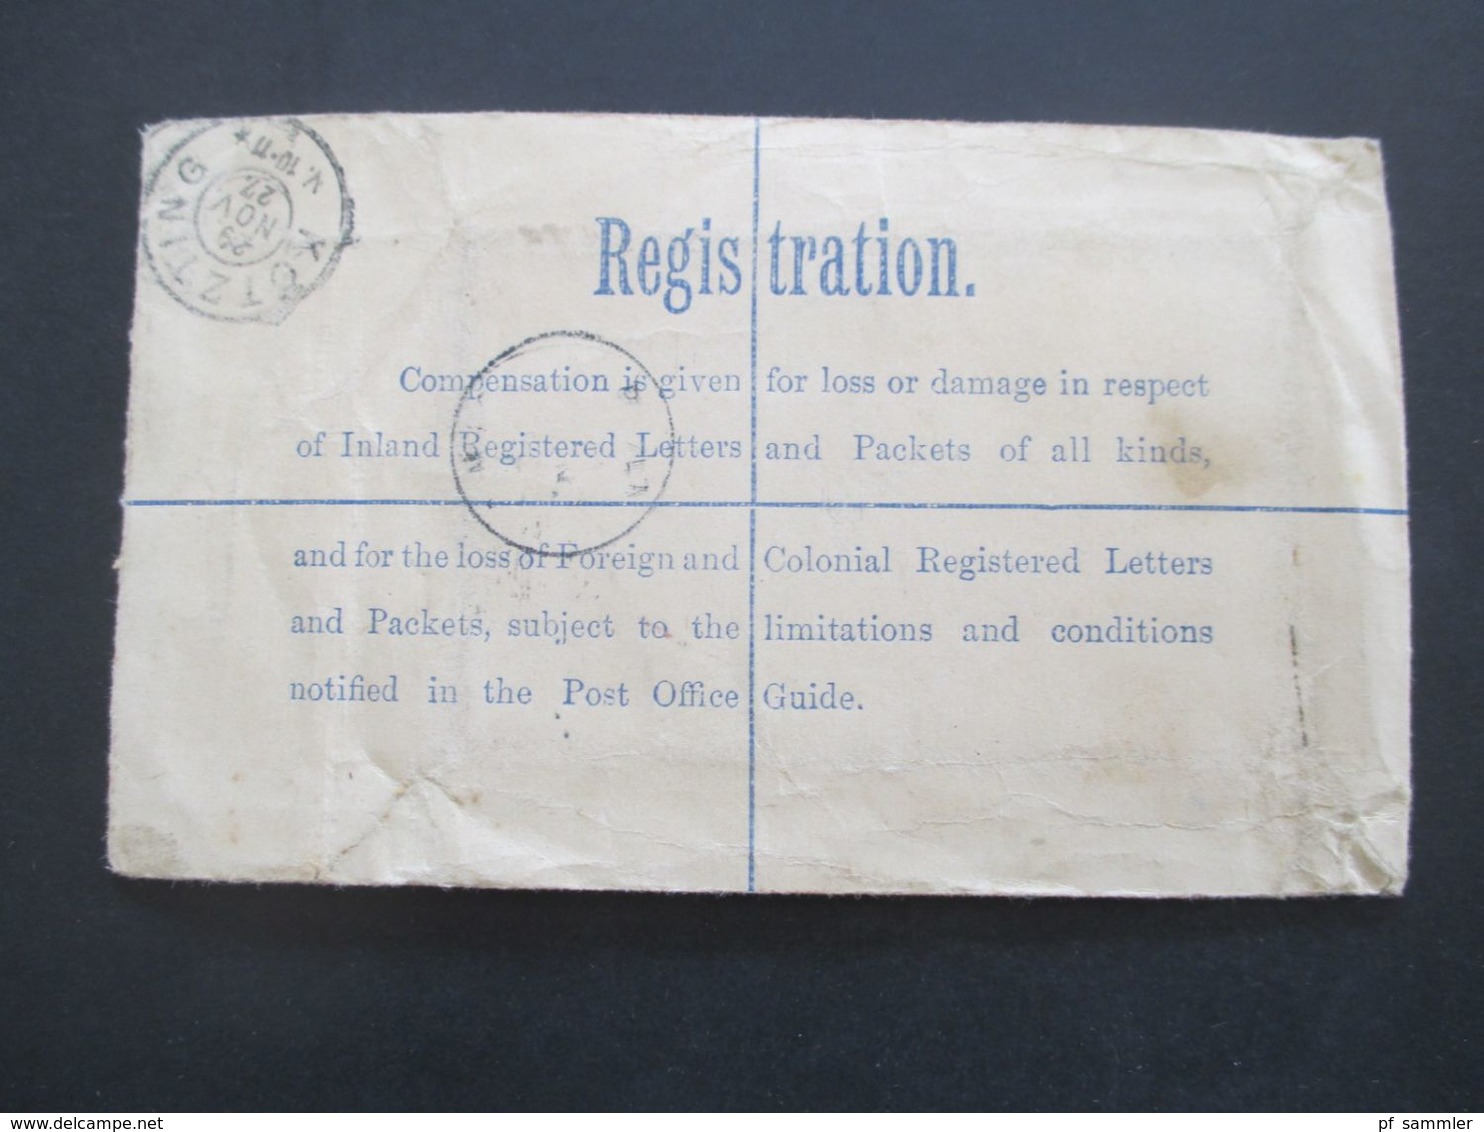 GB 1897 - ca. 1931 Registered Letter alle mit Zusatzfrankaturen nach Nürnberg gesendet. Viele Stempel!! 37 Belege.